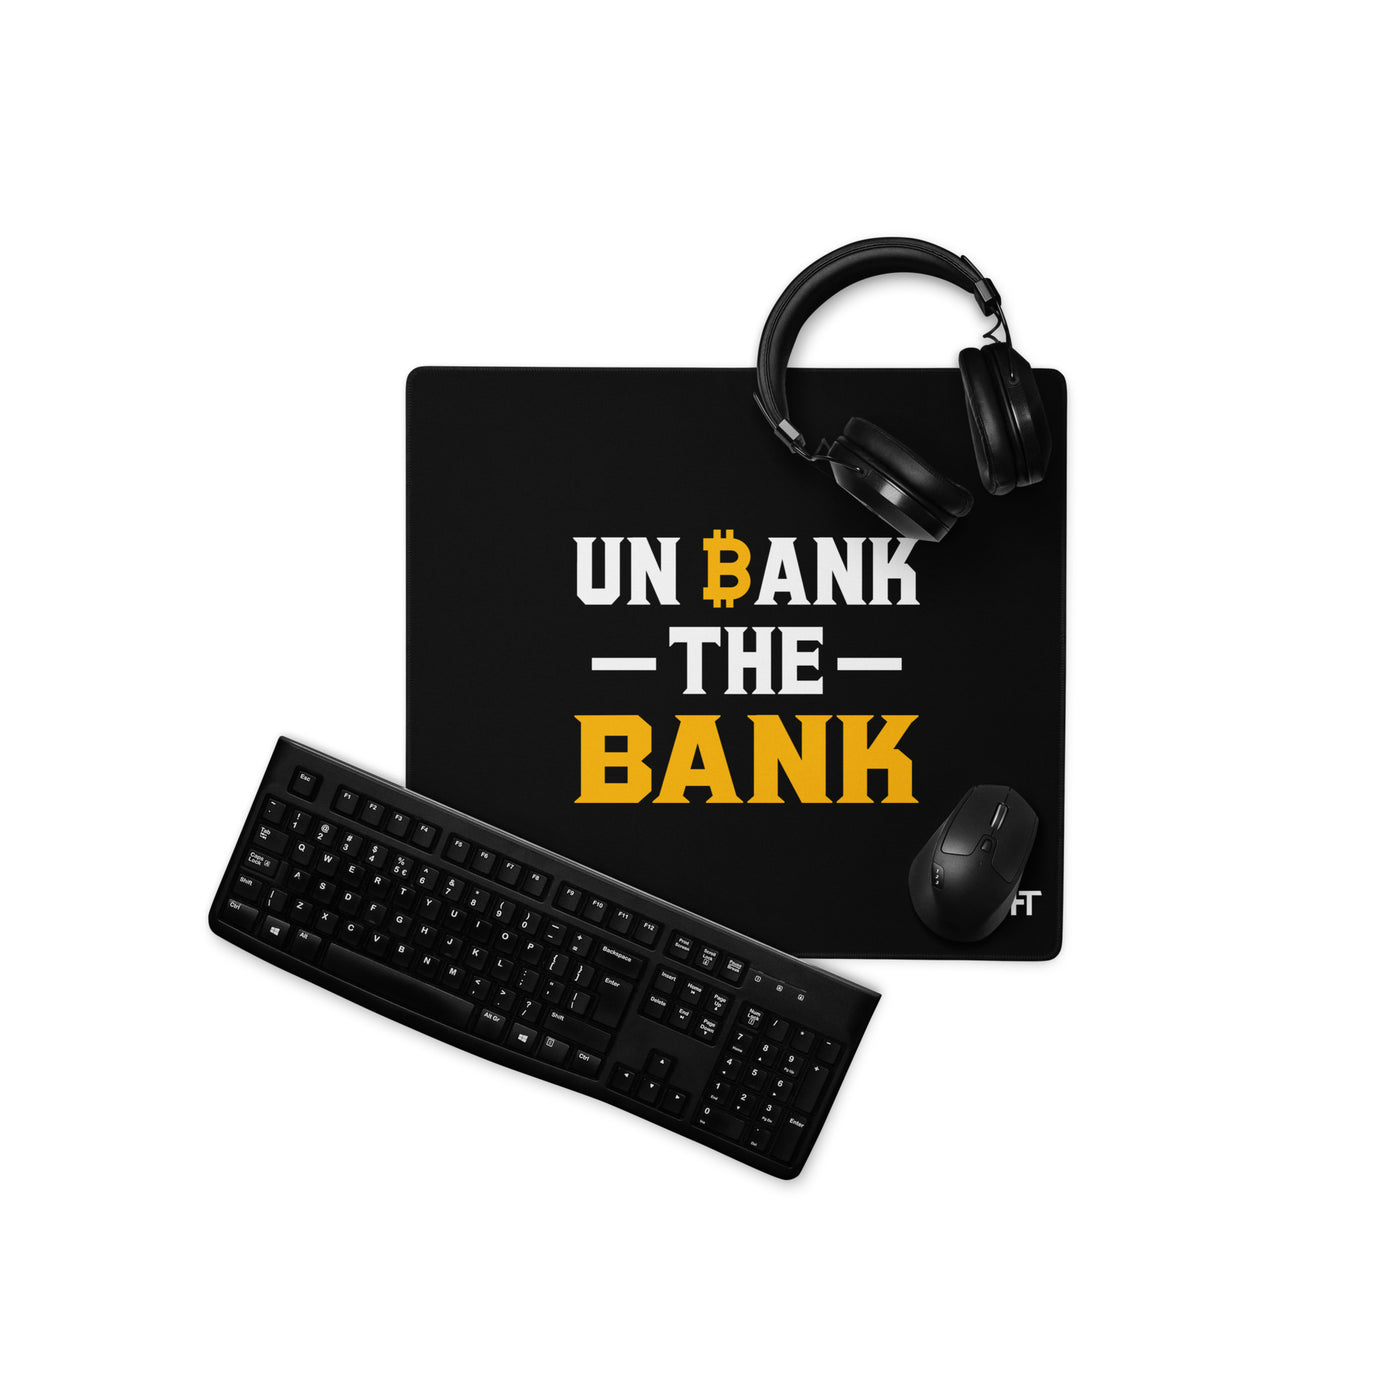 Unbank the Bank - Desk Mat